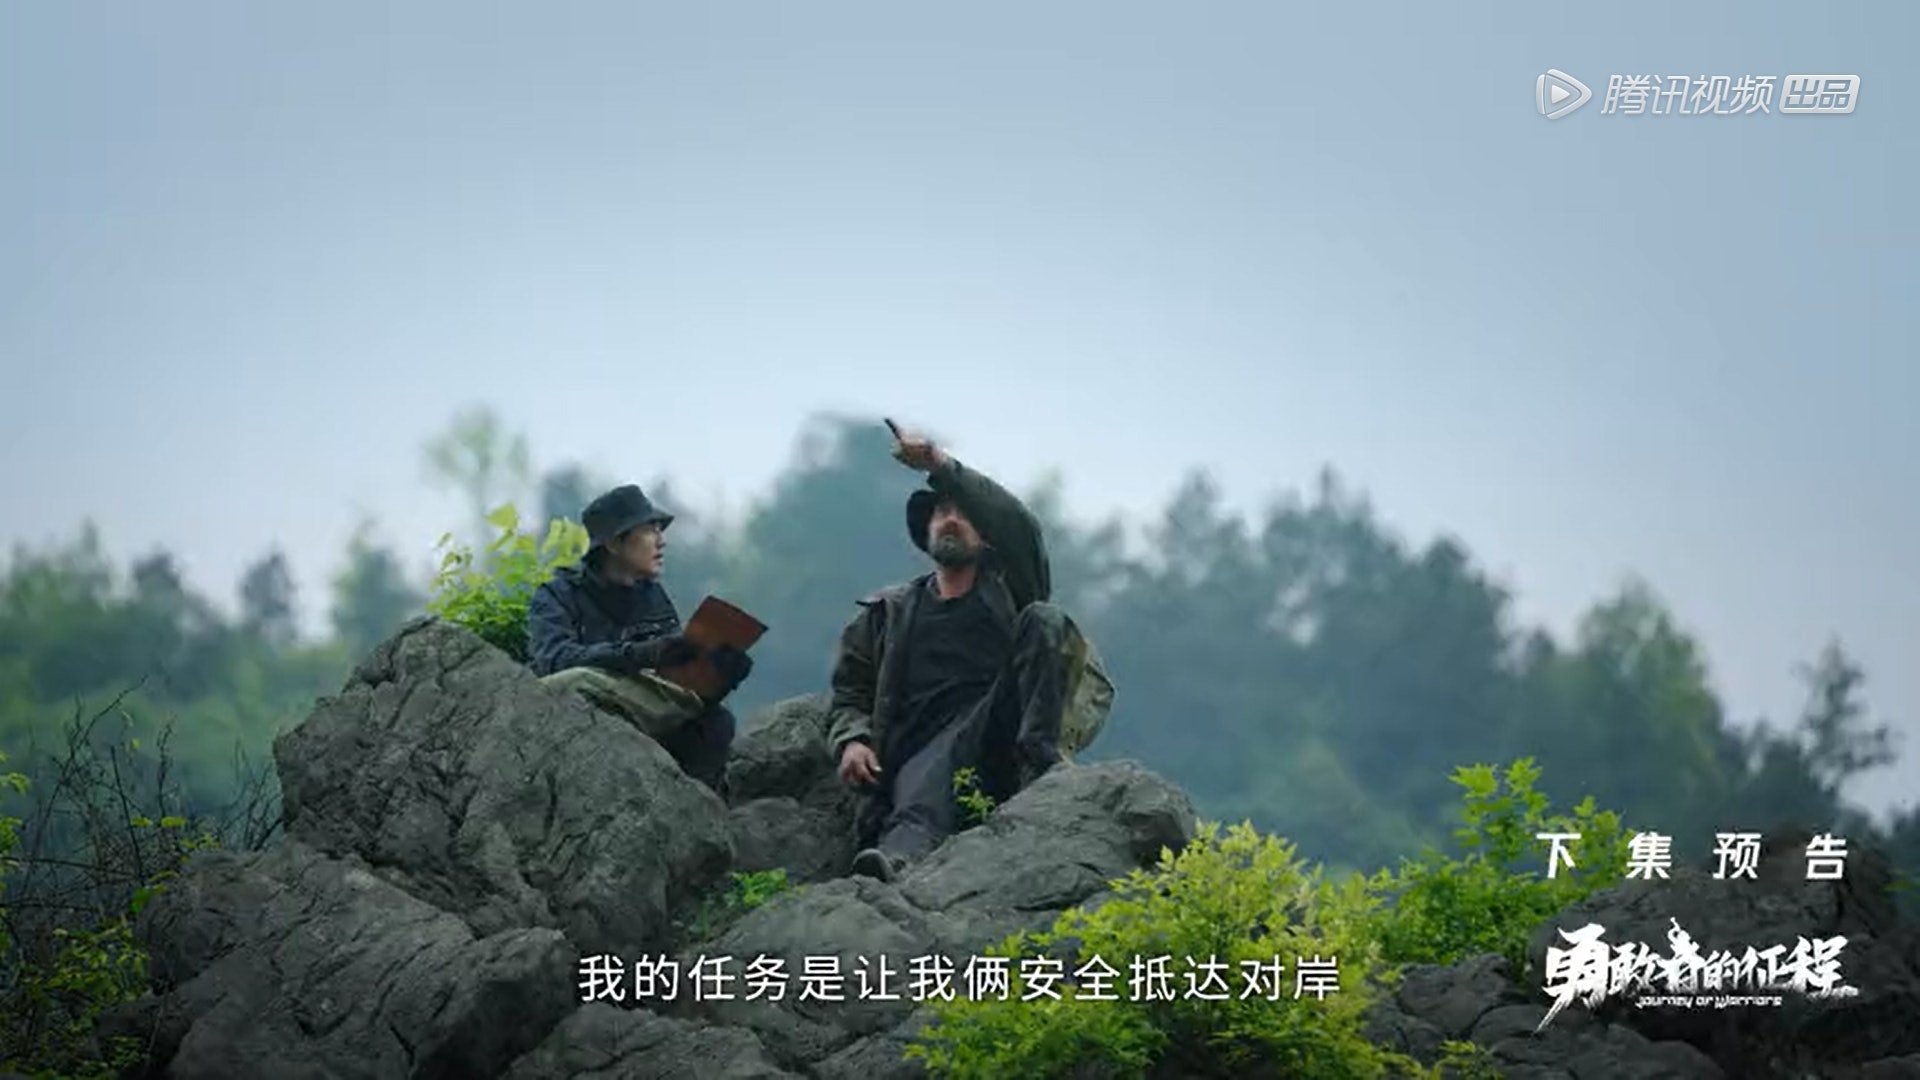 锺汉良体验红军征程  节目被质疑造假纯粹摆拍